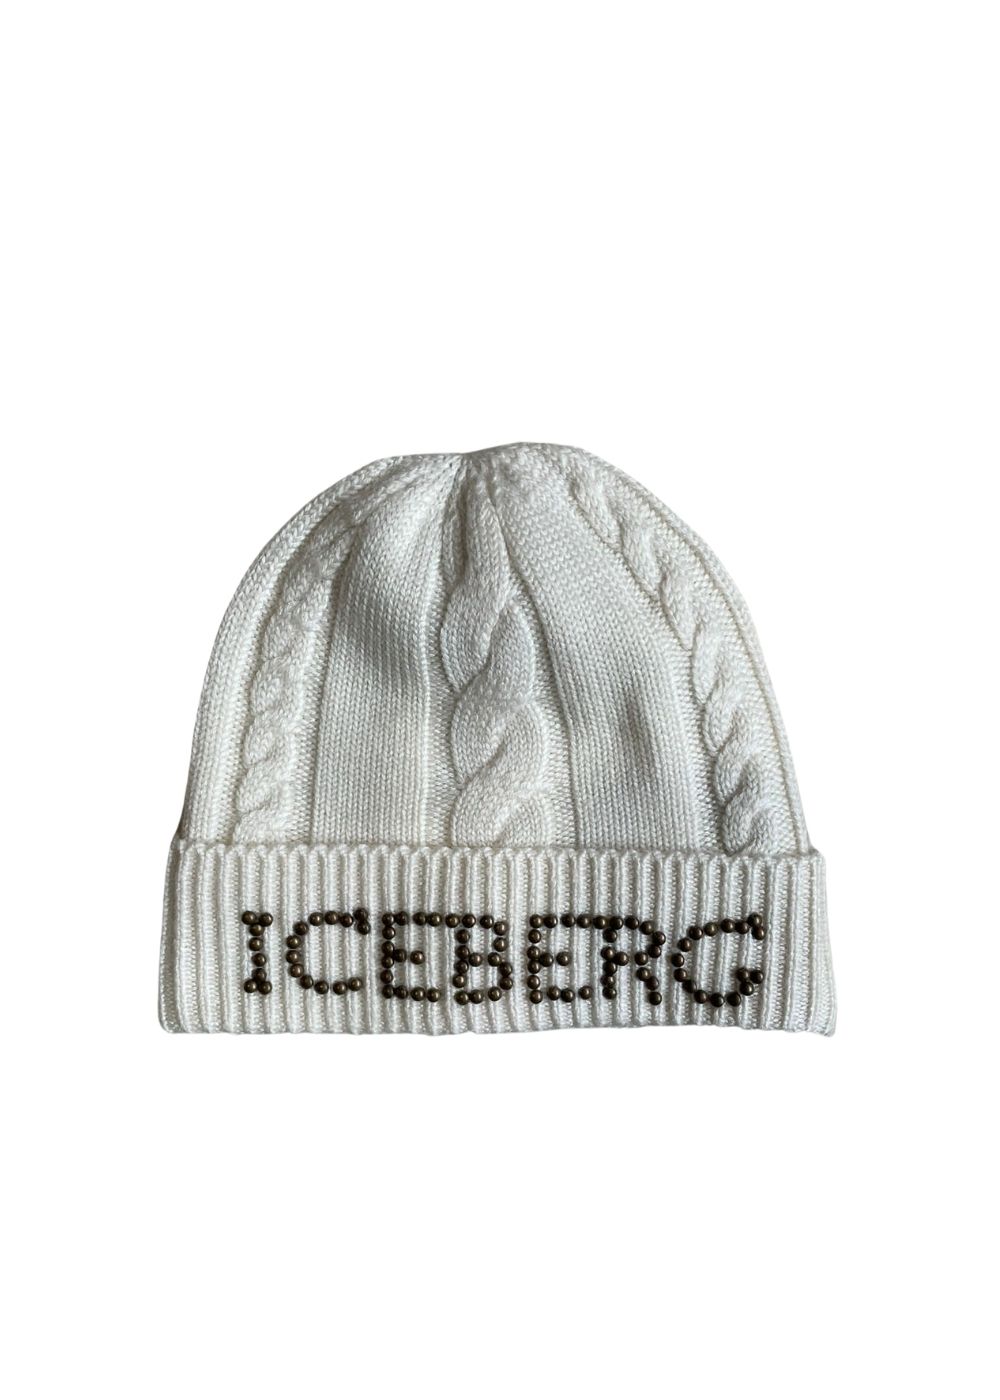 Featured image for “Iceberg Berretto Con Logo”